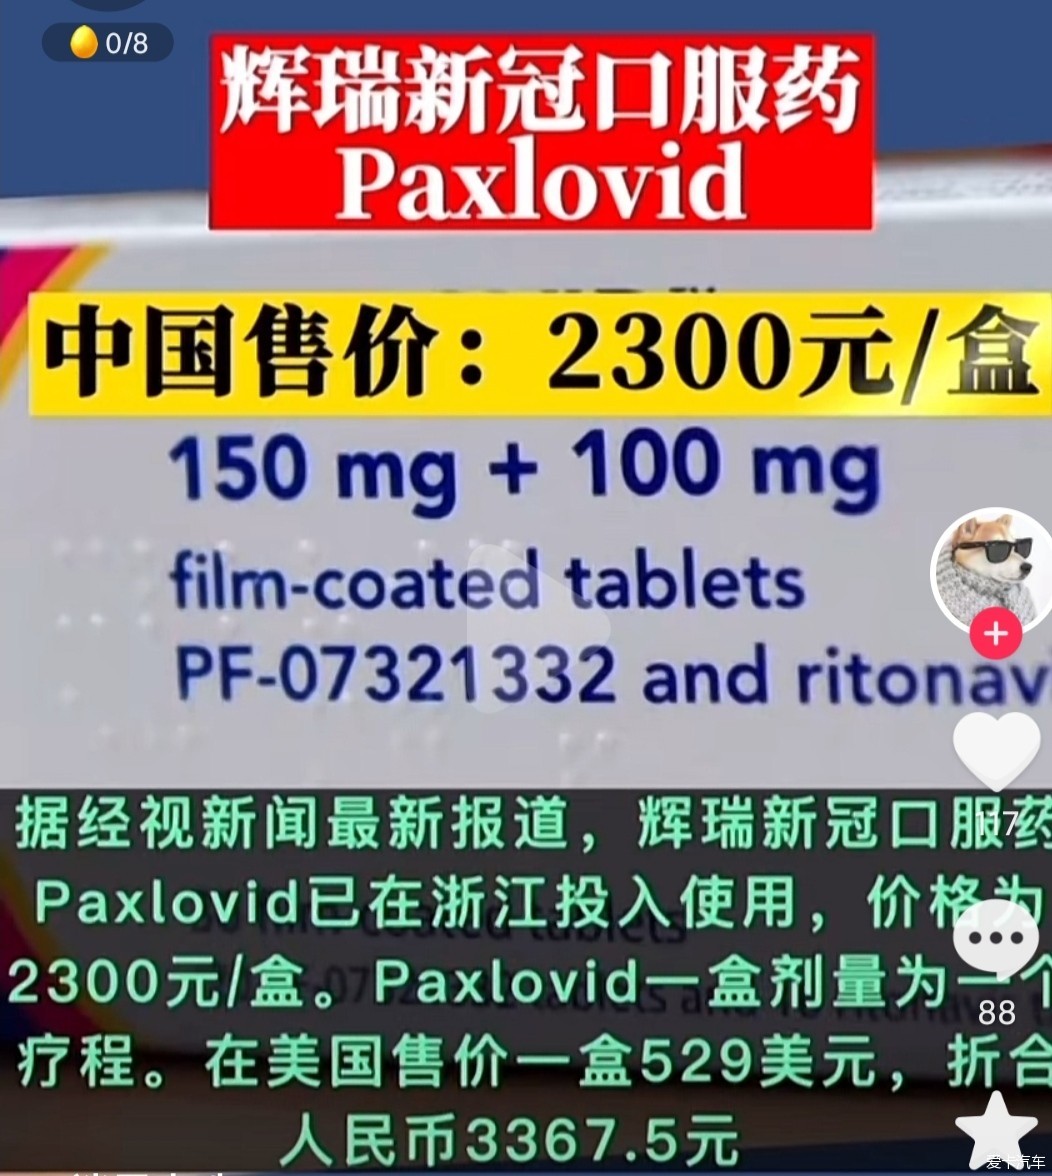 辉瑞新冠口服药每盒卖2300元rmb,在香港卖3000元港币